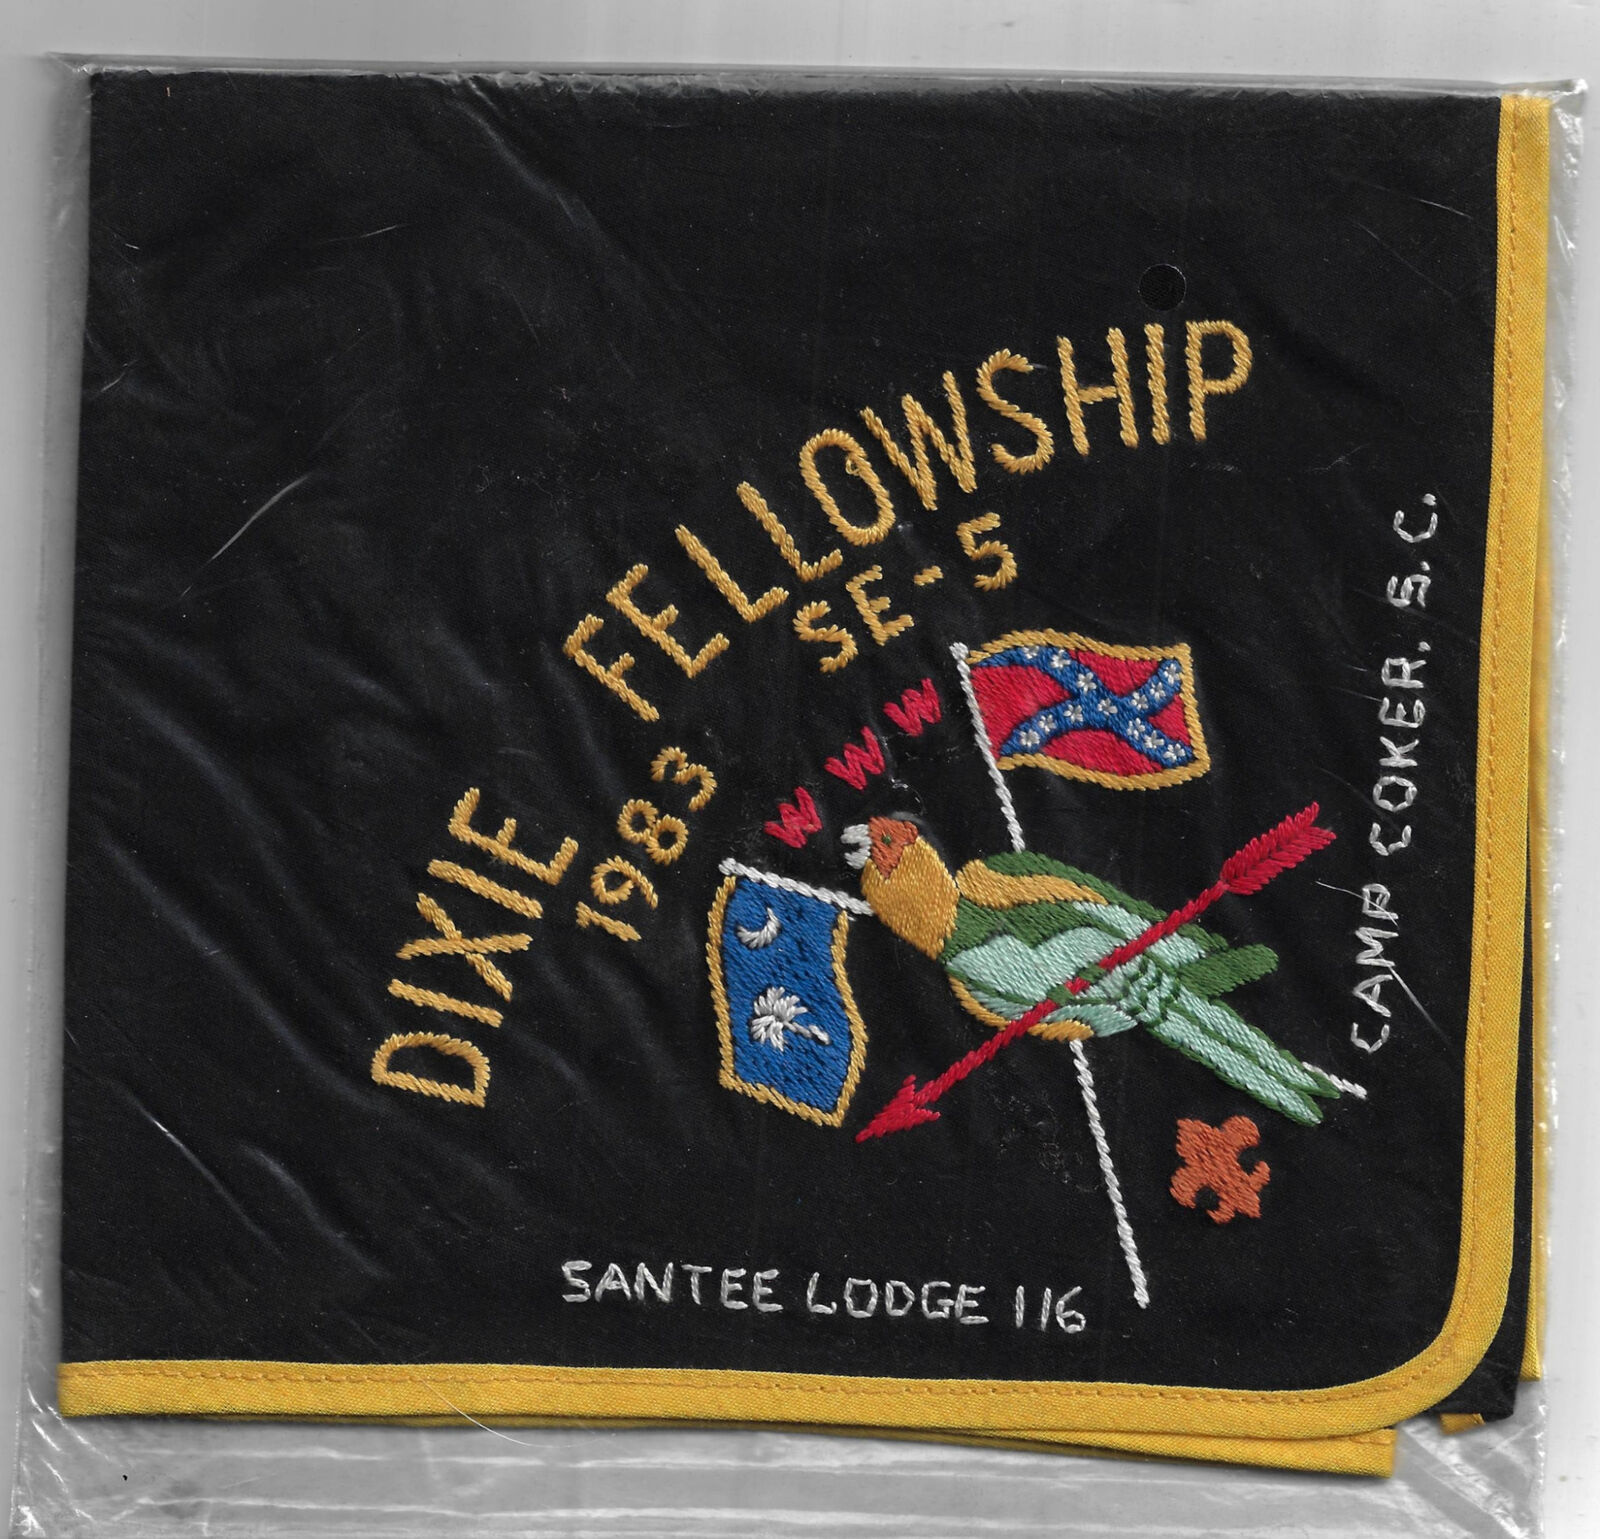 1983 Dixie Fellowship Neckerchief Santee 116 Camp Coker